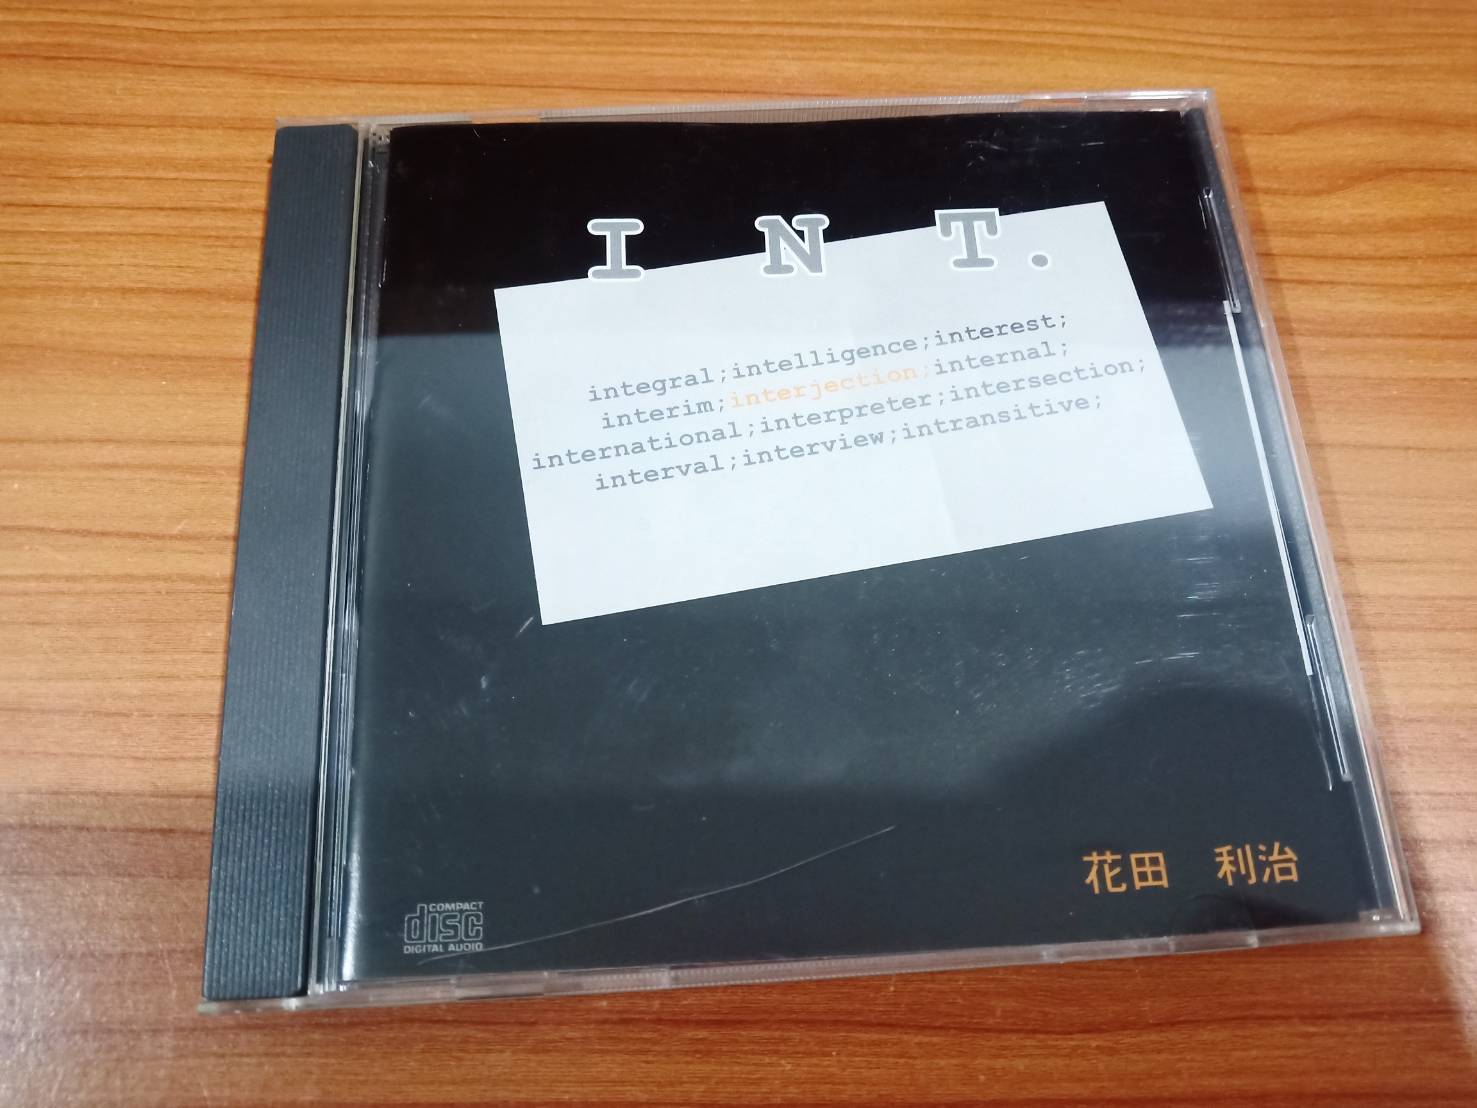 CD MUSIC ซีดีเพลง INT. 花田